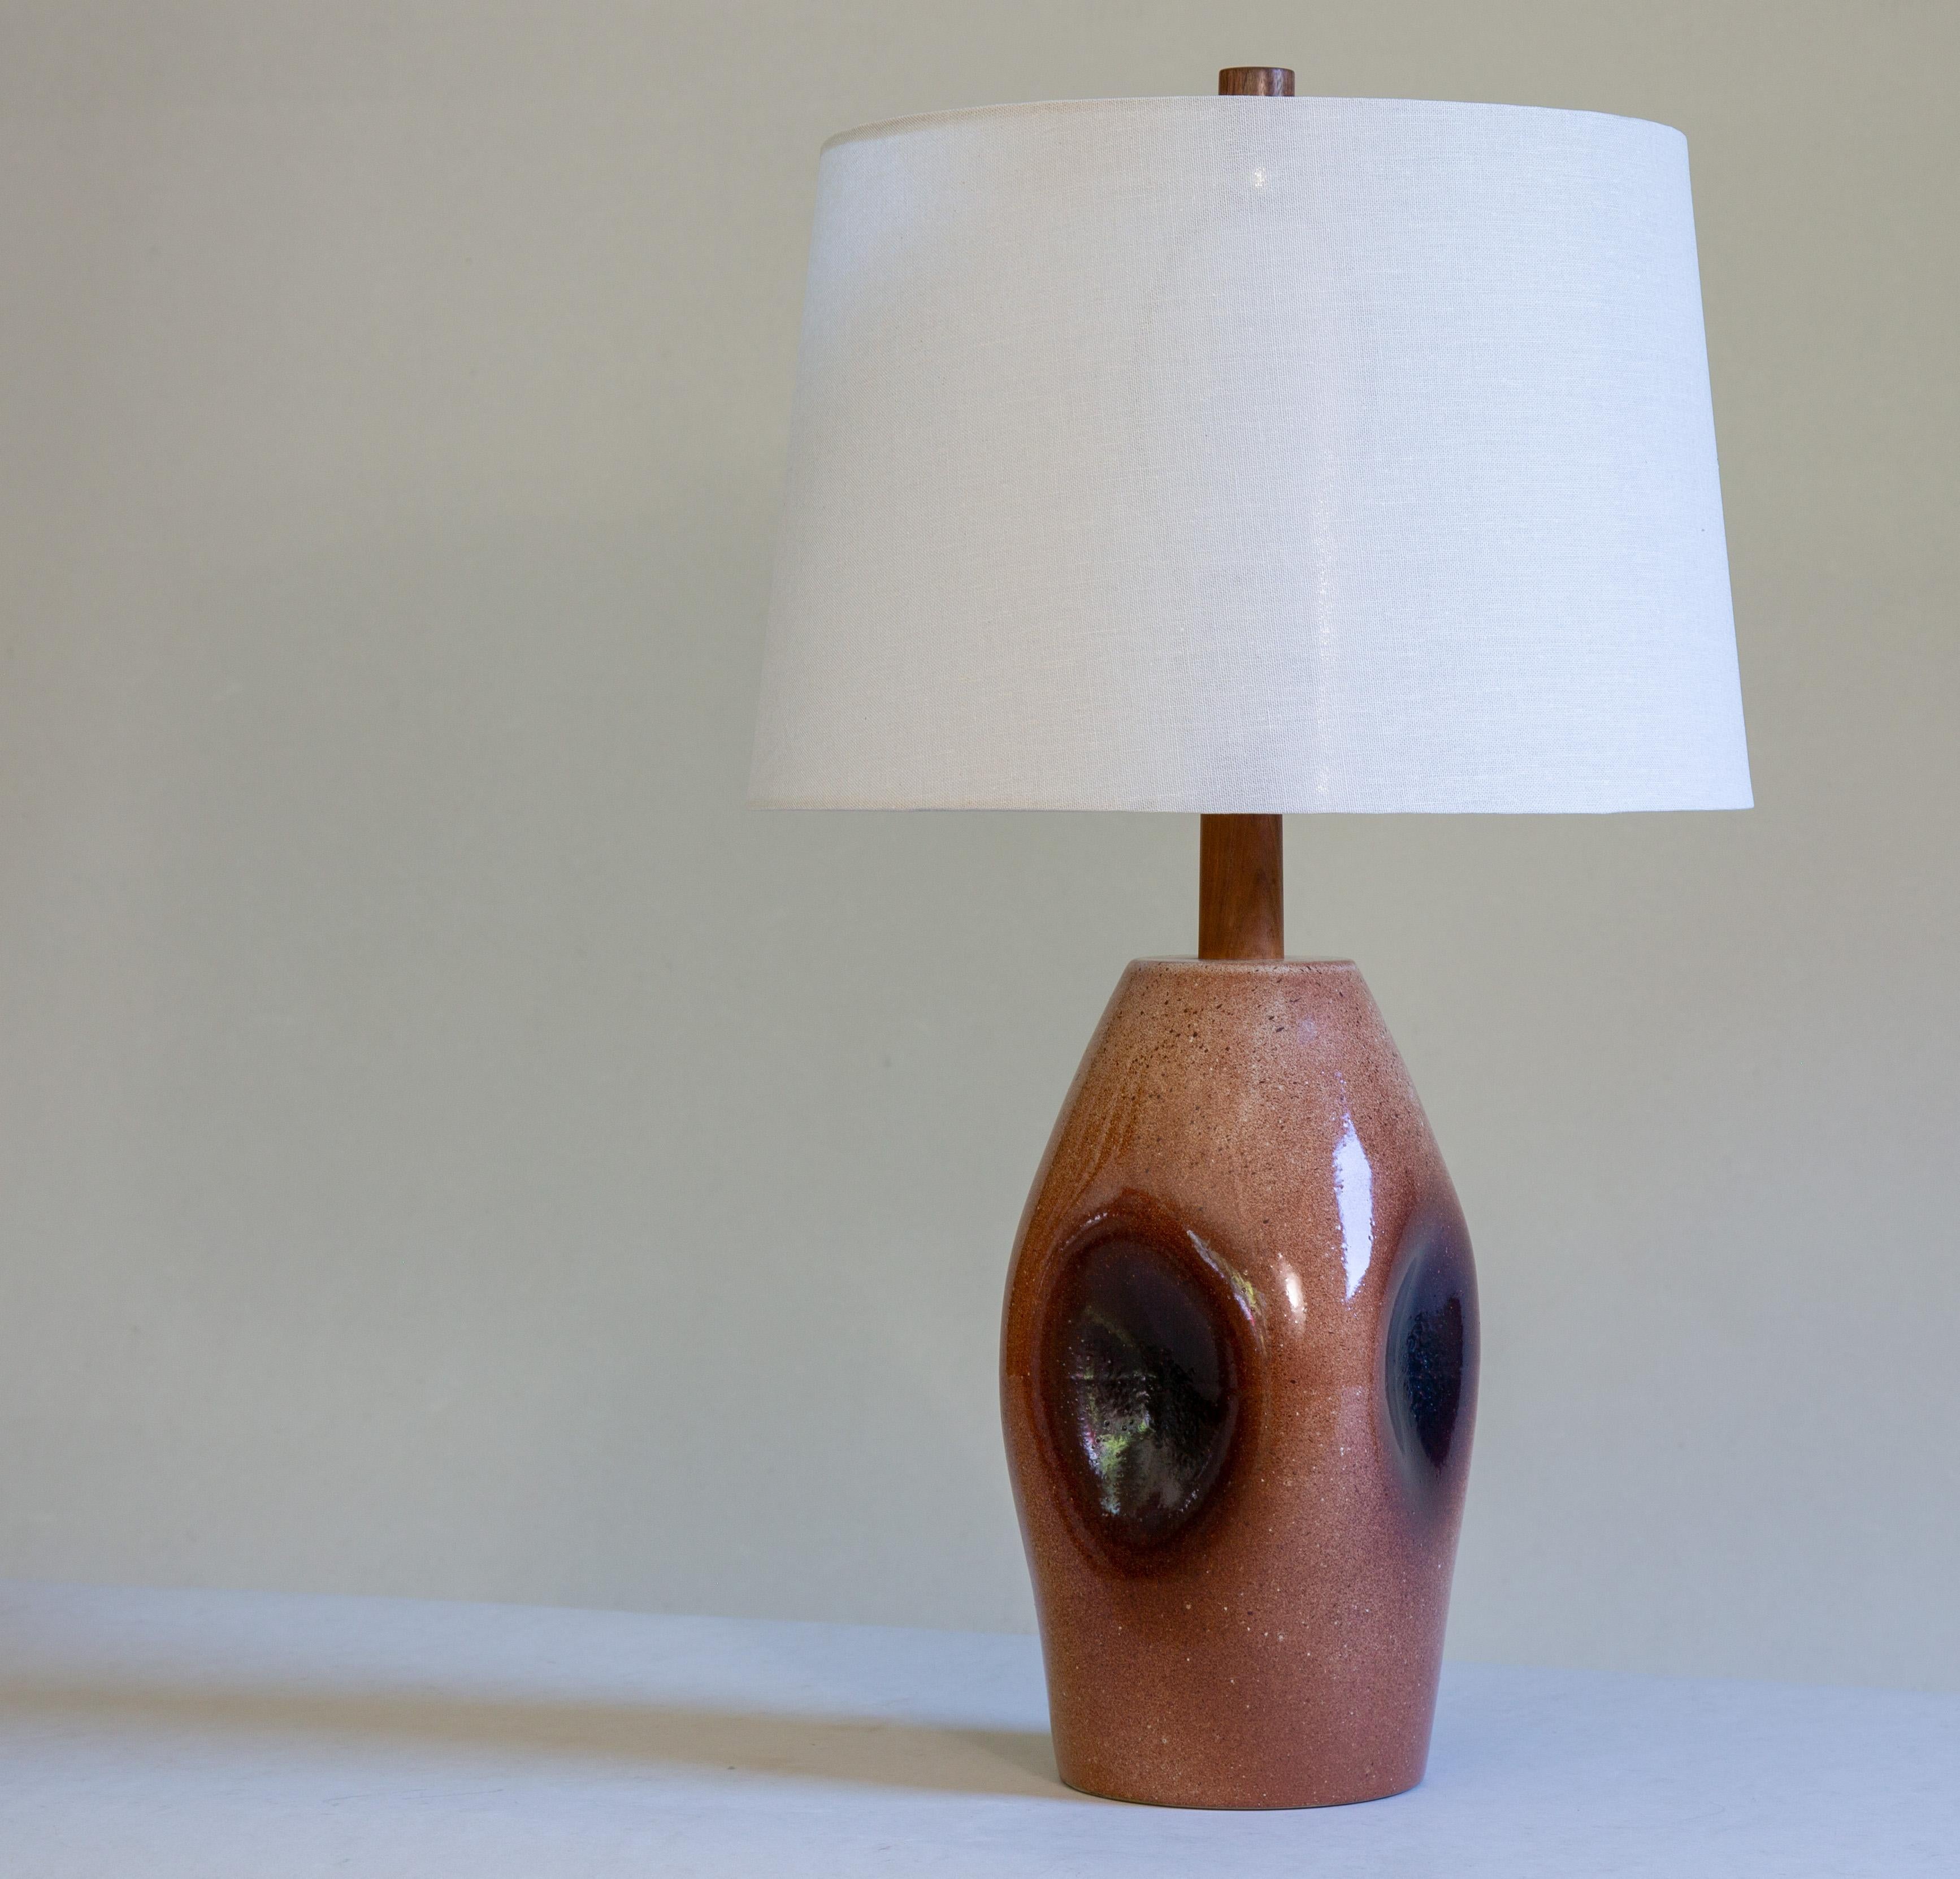 Cette lampe a une forme personnalisée, comme l'a confirmé sa fille Ann Martz. Cette forme n'apparaît dans aucun des catalogues et il s'agit probablement d'un accident de cuisson qui s'est transformé en une lampe personnalisée unique.  La glaçure